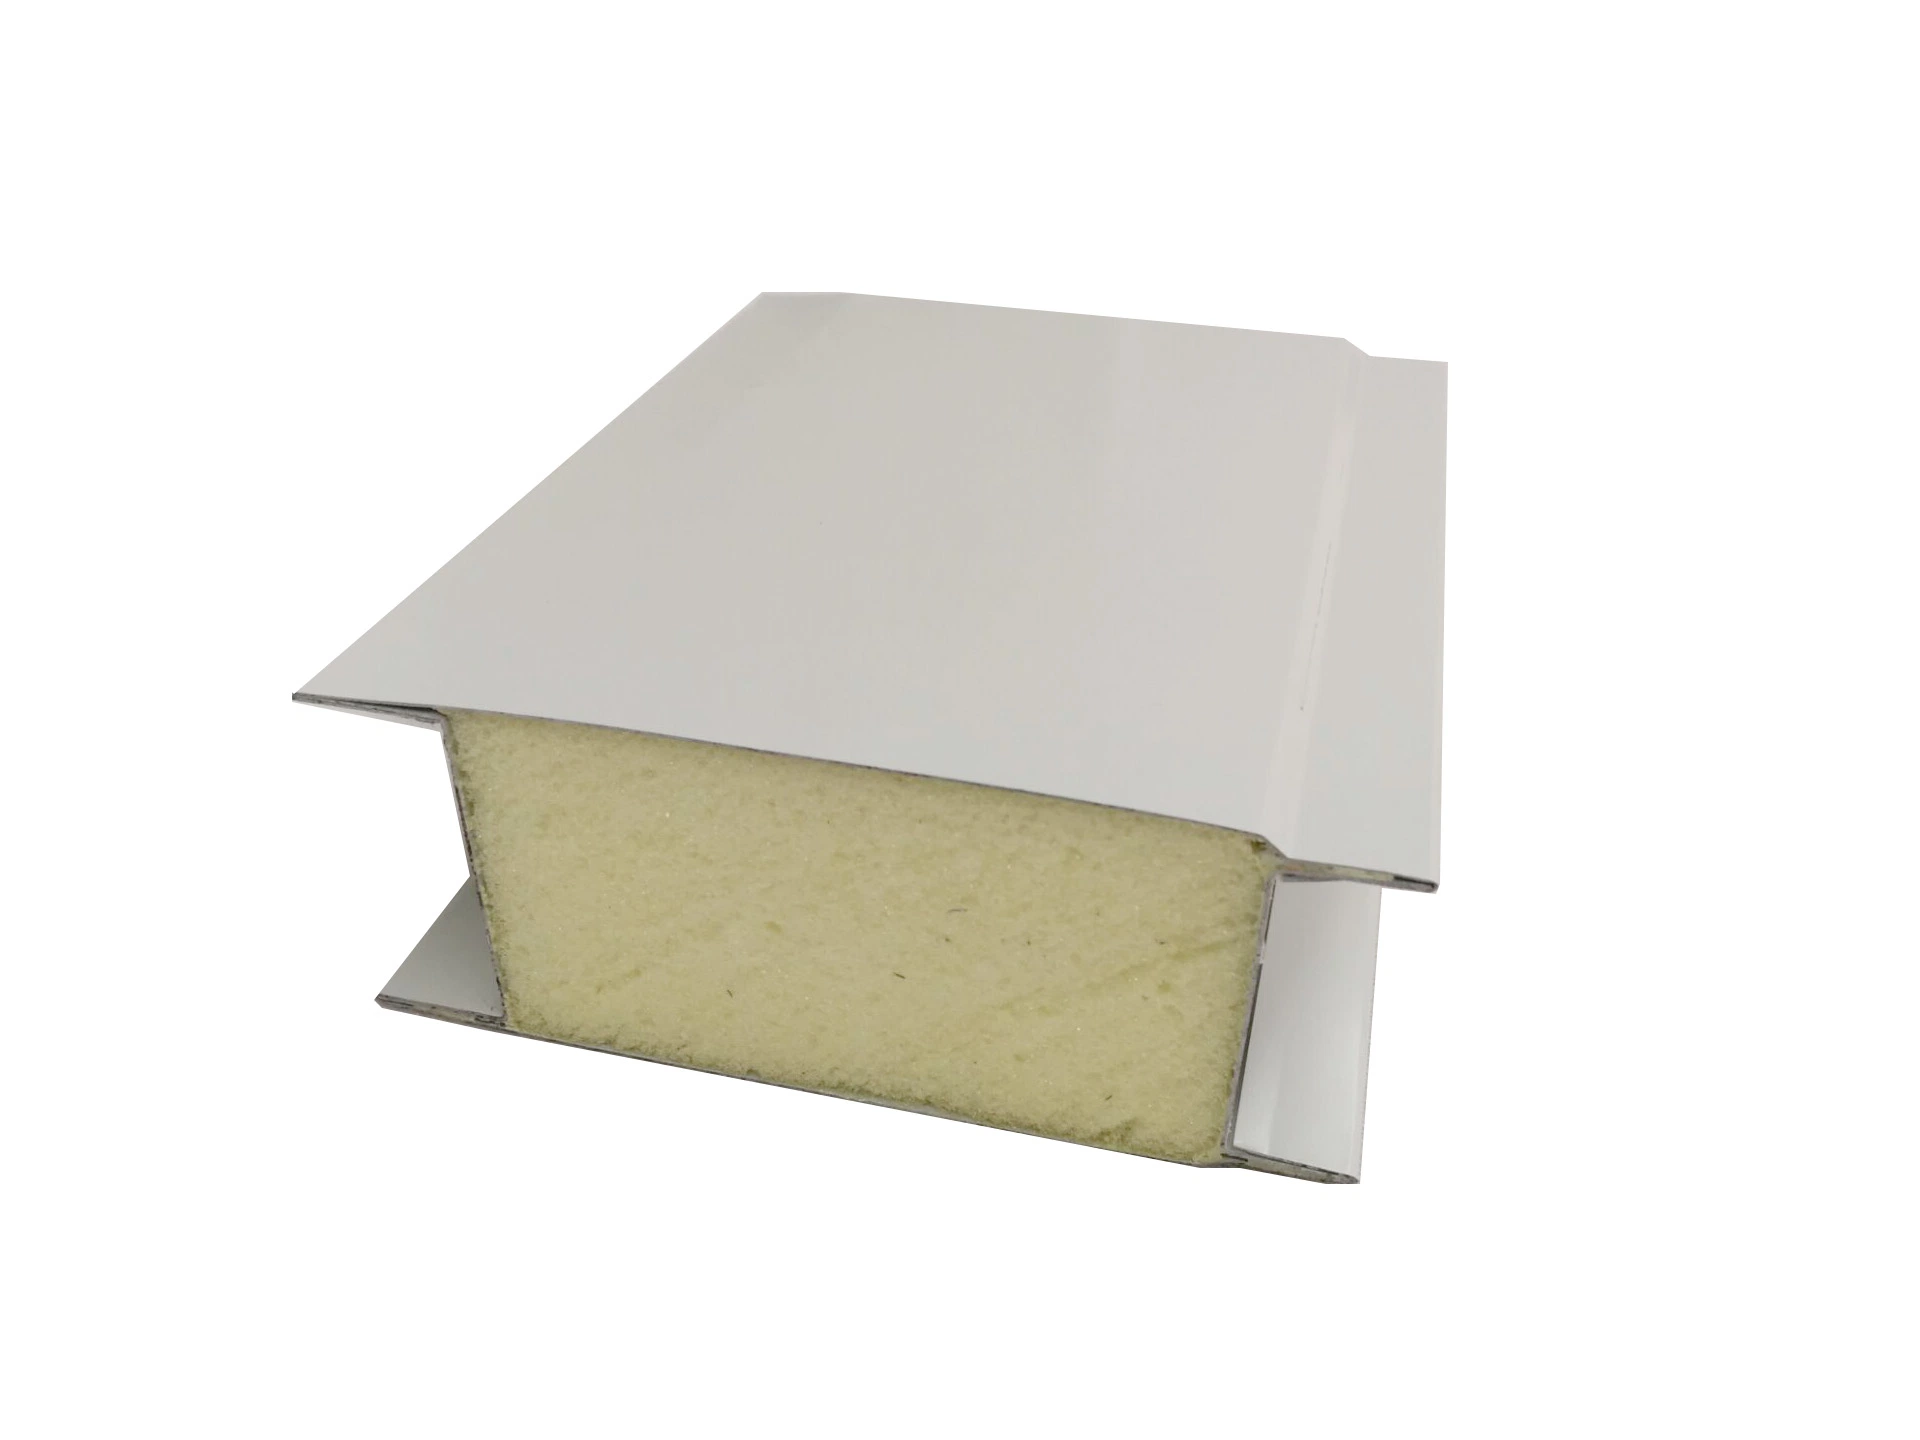 Panel Sandwich metálico Hecho a mano la pared y techo de paneles sándwich